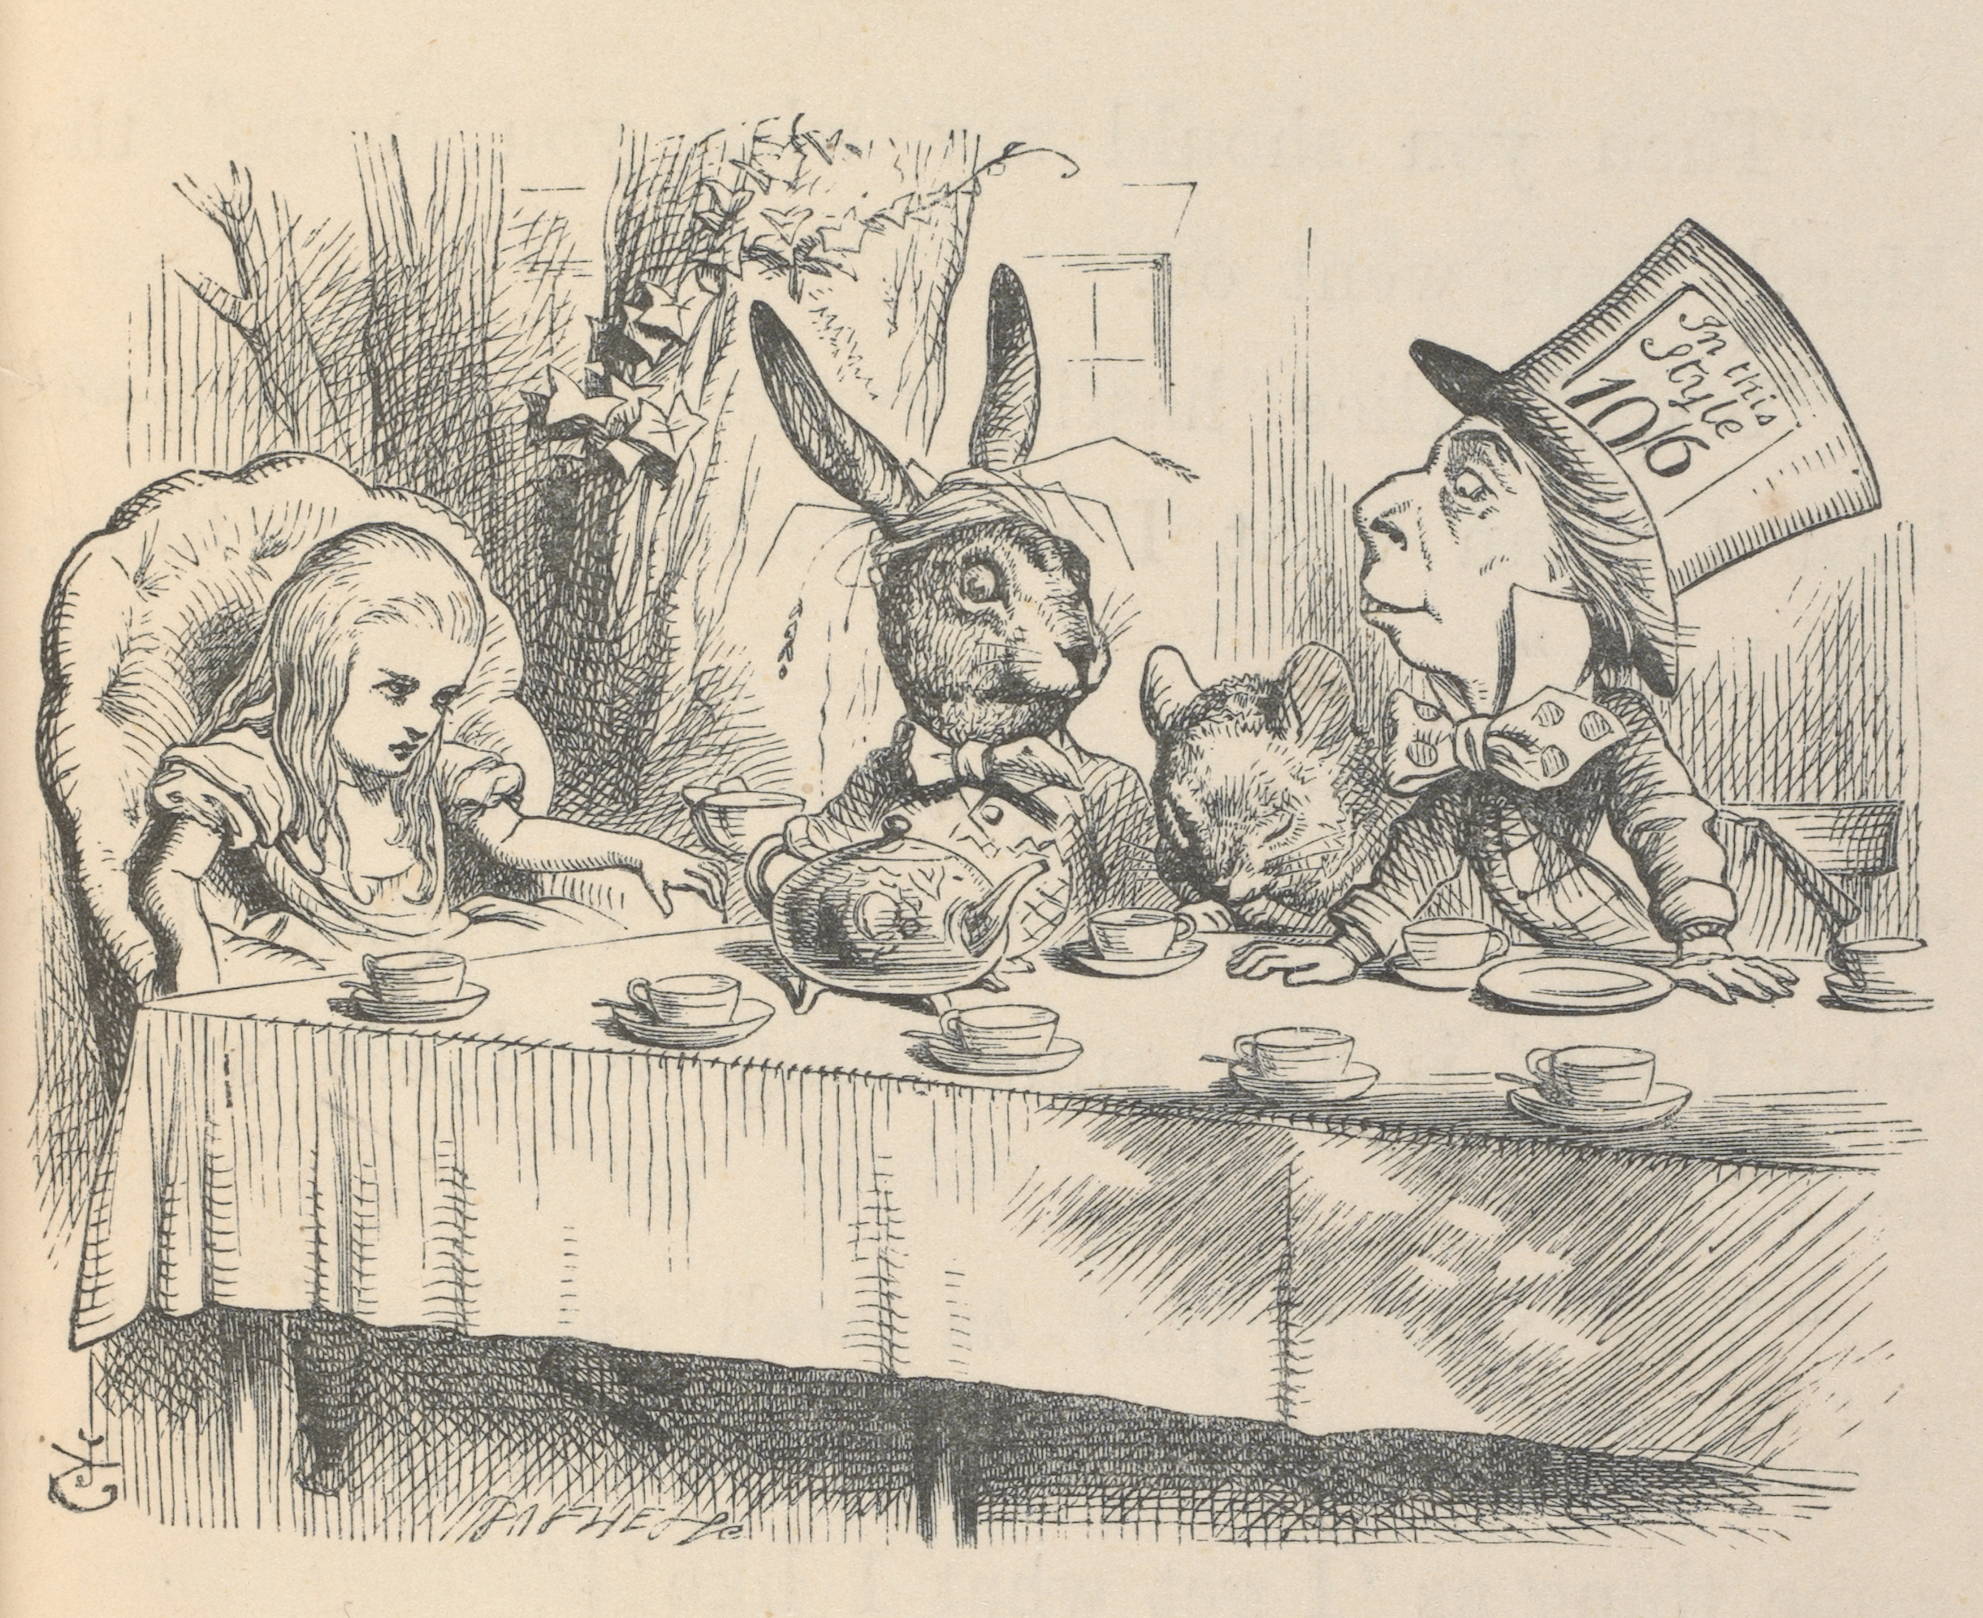 マッド・ハッターのお茶会でのアリス、『不思議の国のアリス』初刊行版本より、ジョン・テニエル画、1866年、 V&A内ナショナル・アート図書館所蔵